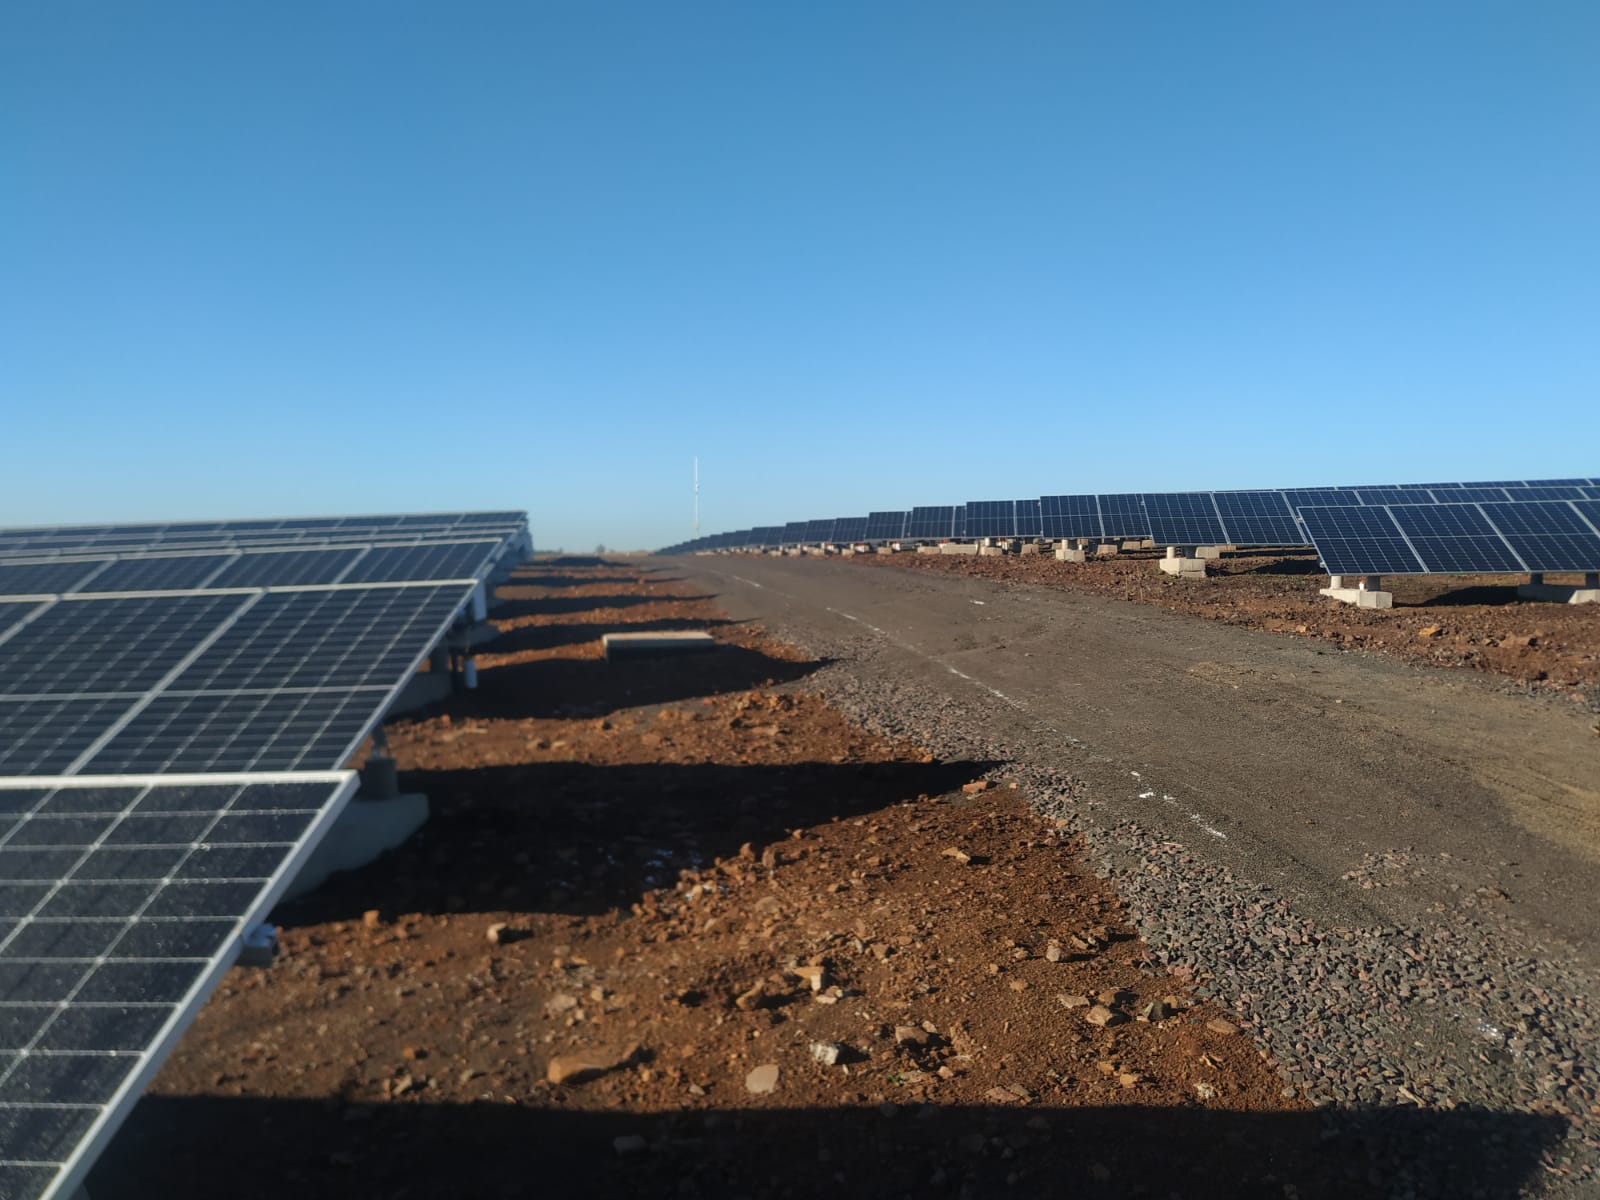 Ponen en marcha el Parque Solar Fotovoltaico "Silicon Misiones", de 5 megas, capaz de abastecer de energía a unas 2 mil familias de Posadas imagen-2